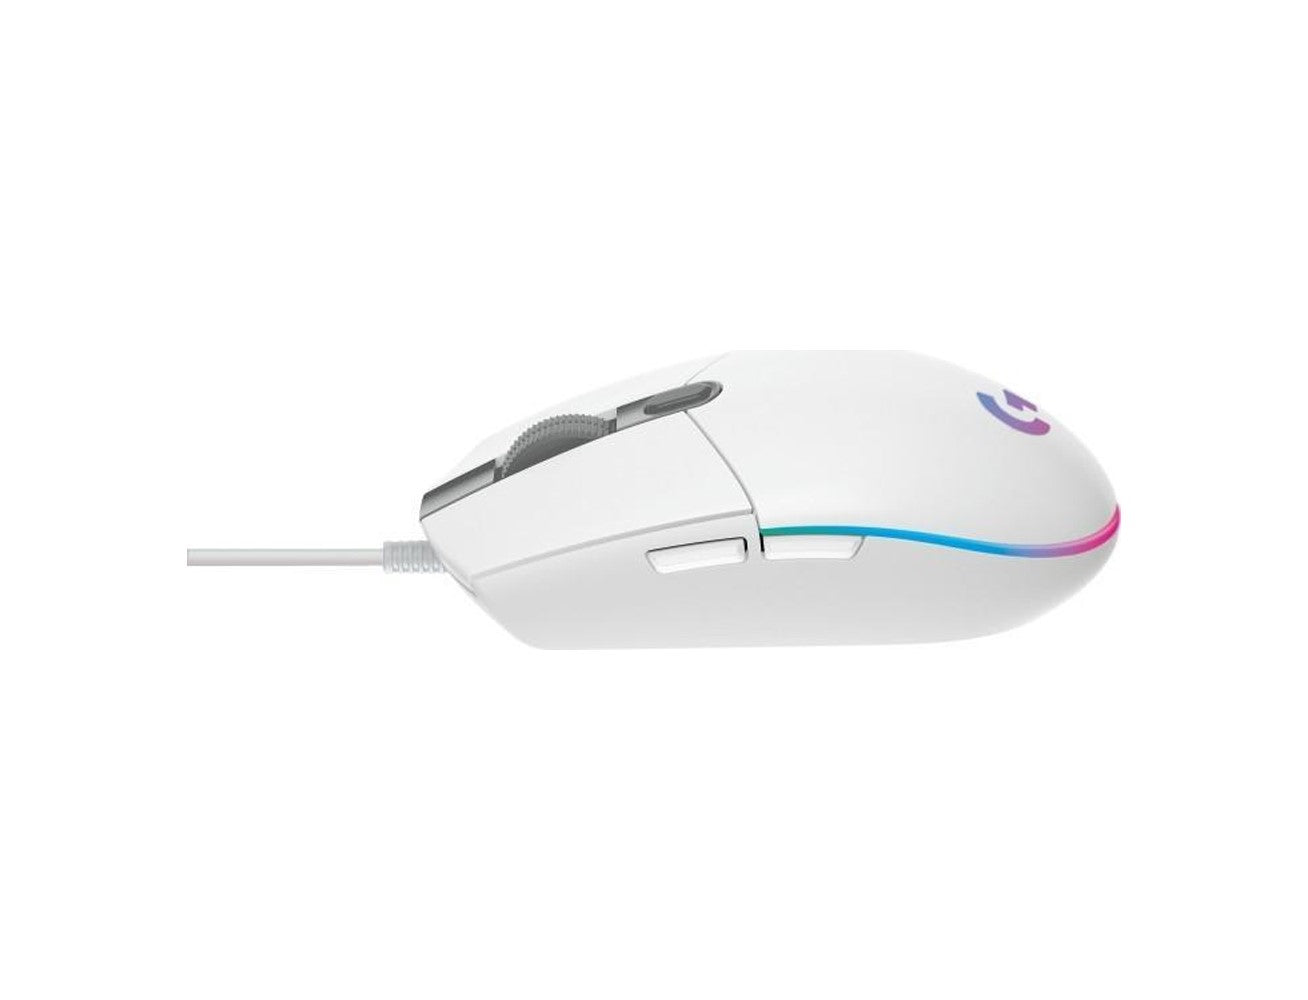 Logitech G203 LIGHTSYNC Gaming Mouse - White